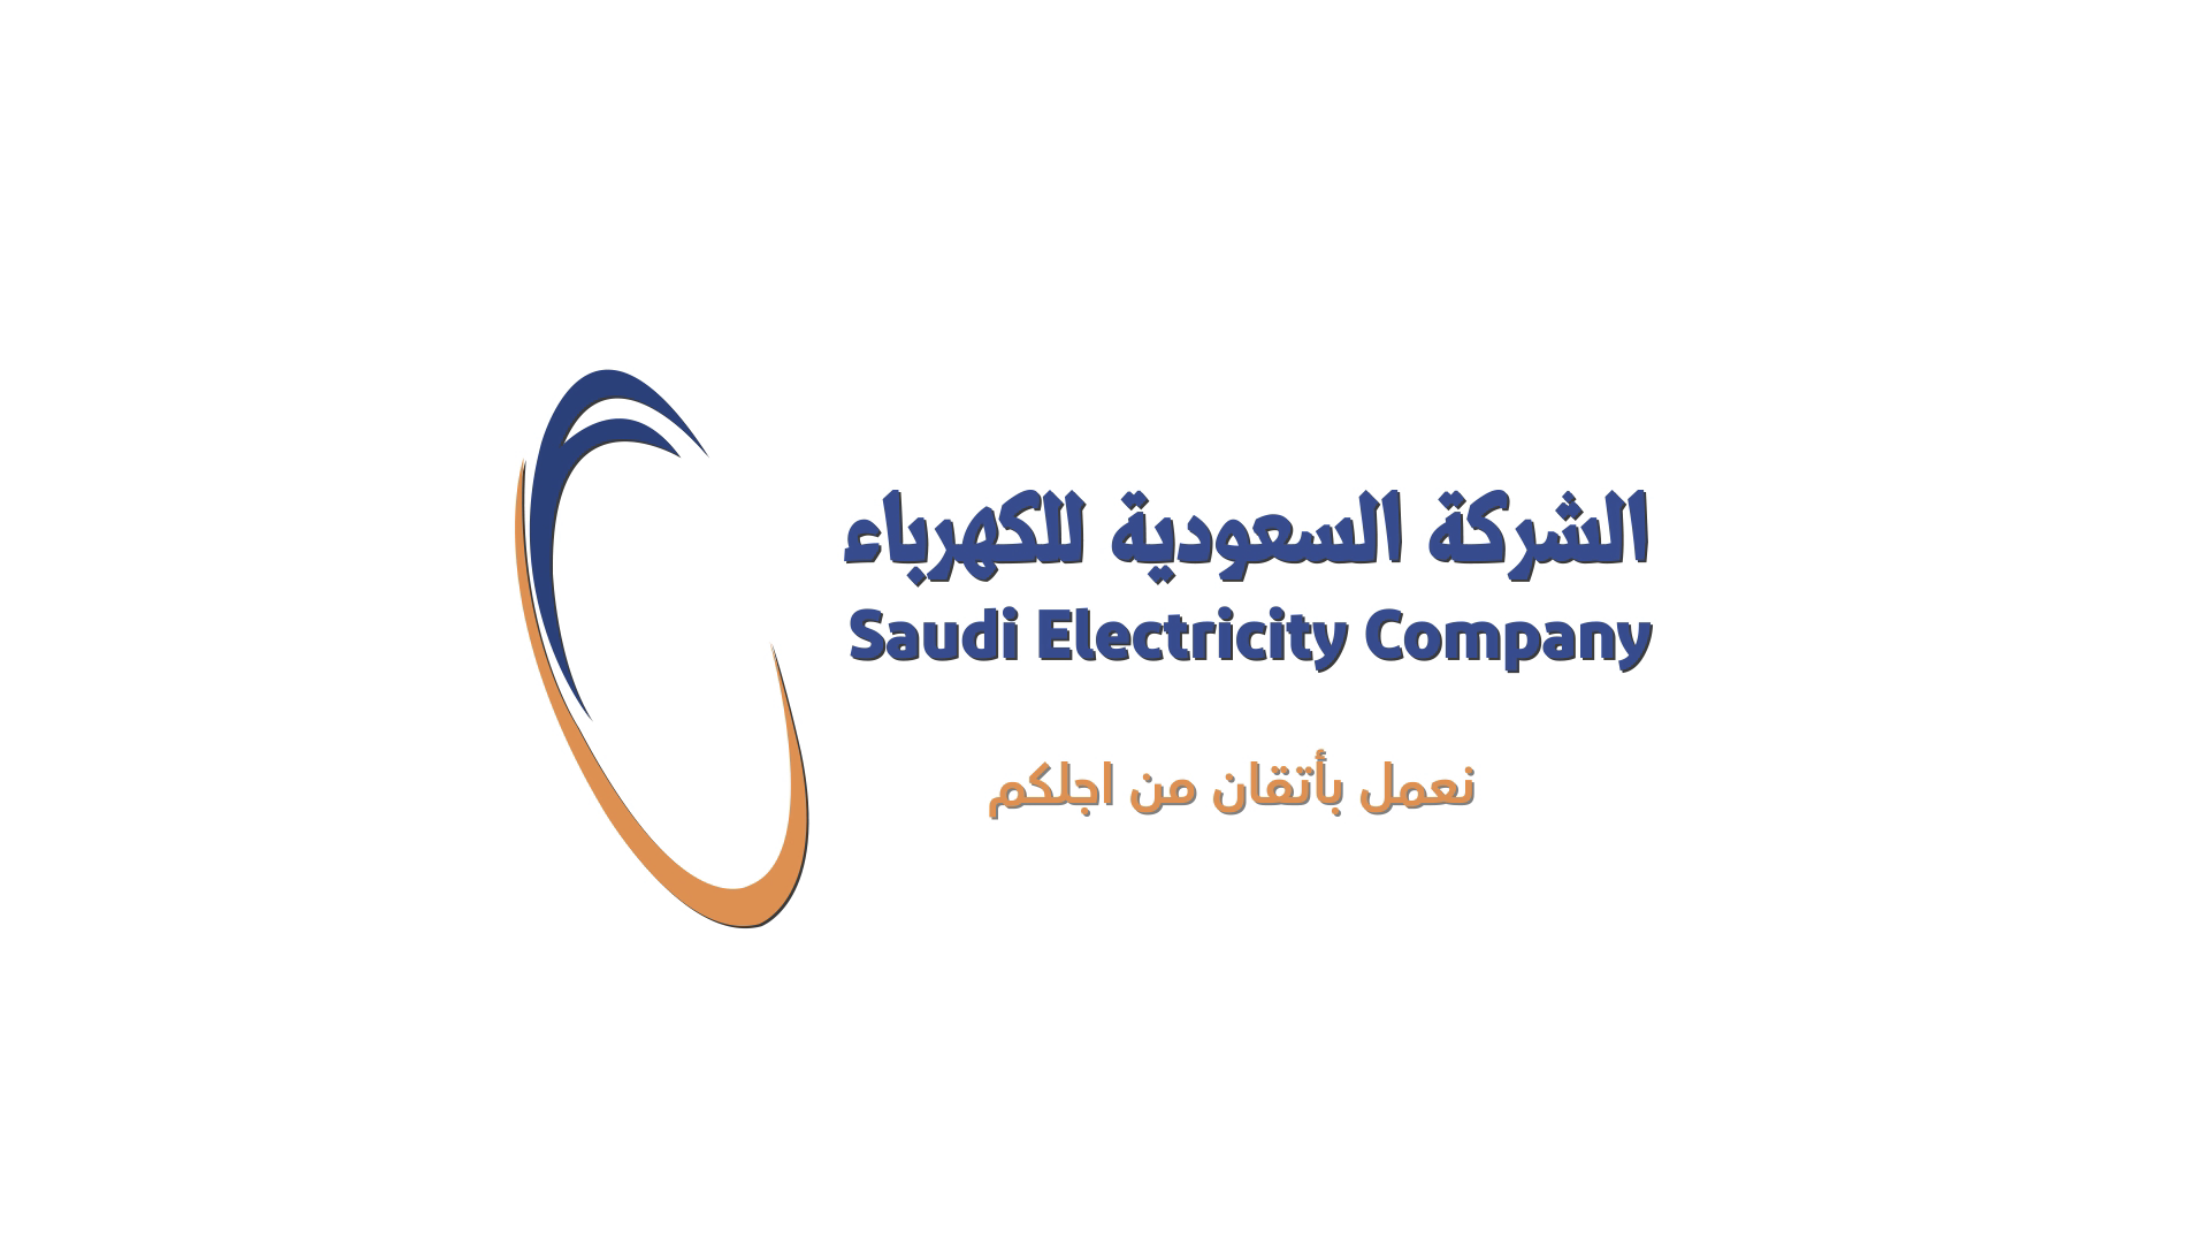 اشتراطات تقديم طلب لتركيب عداد كهرباء جديد في السعودية والخطوات